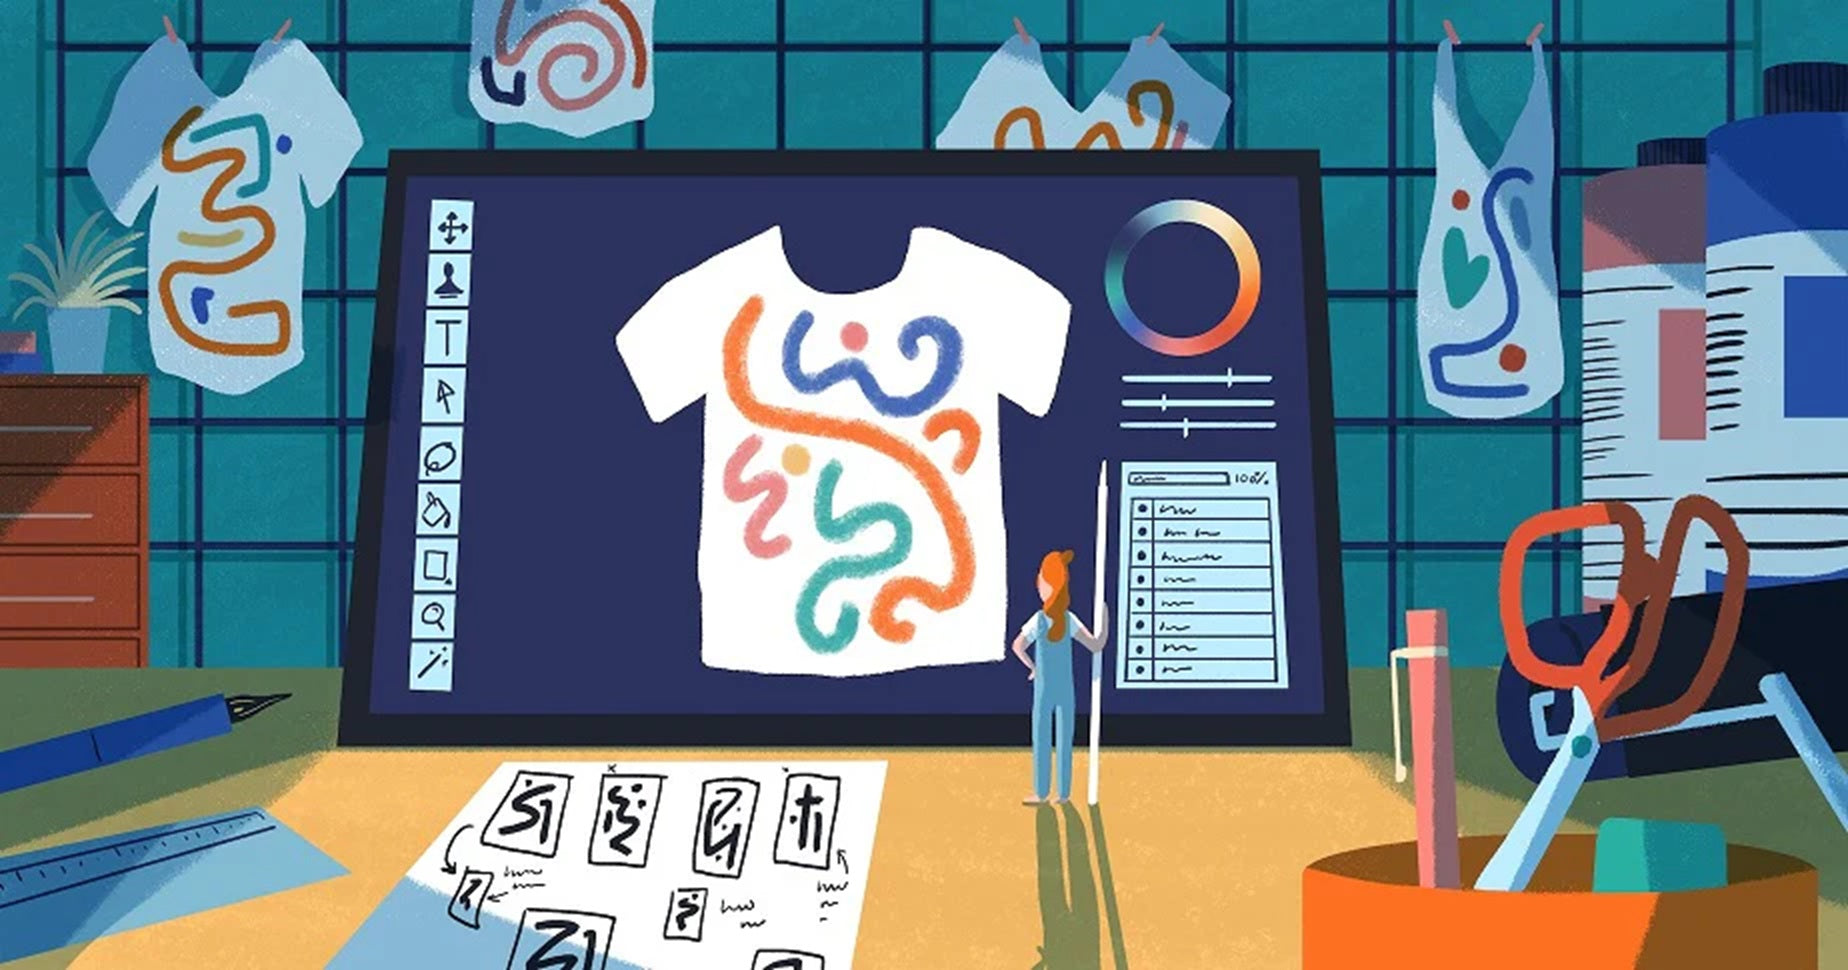 Die Illustration zeigt einen großen Bildschirm mit eine T-Shirt Design. Vor dem Bildschirm steht eine kleine Person mit einem Stift in der Hand.